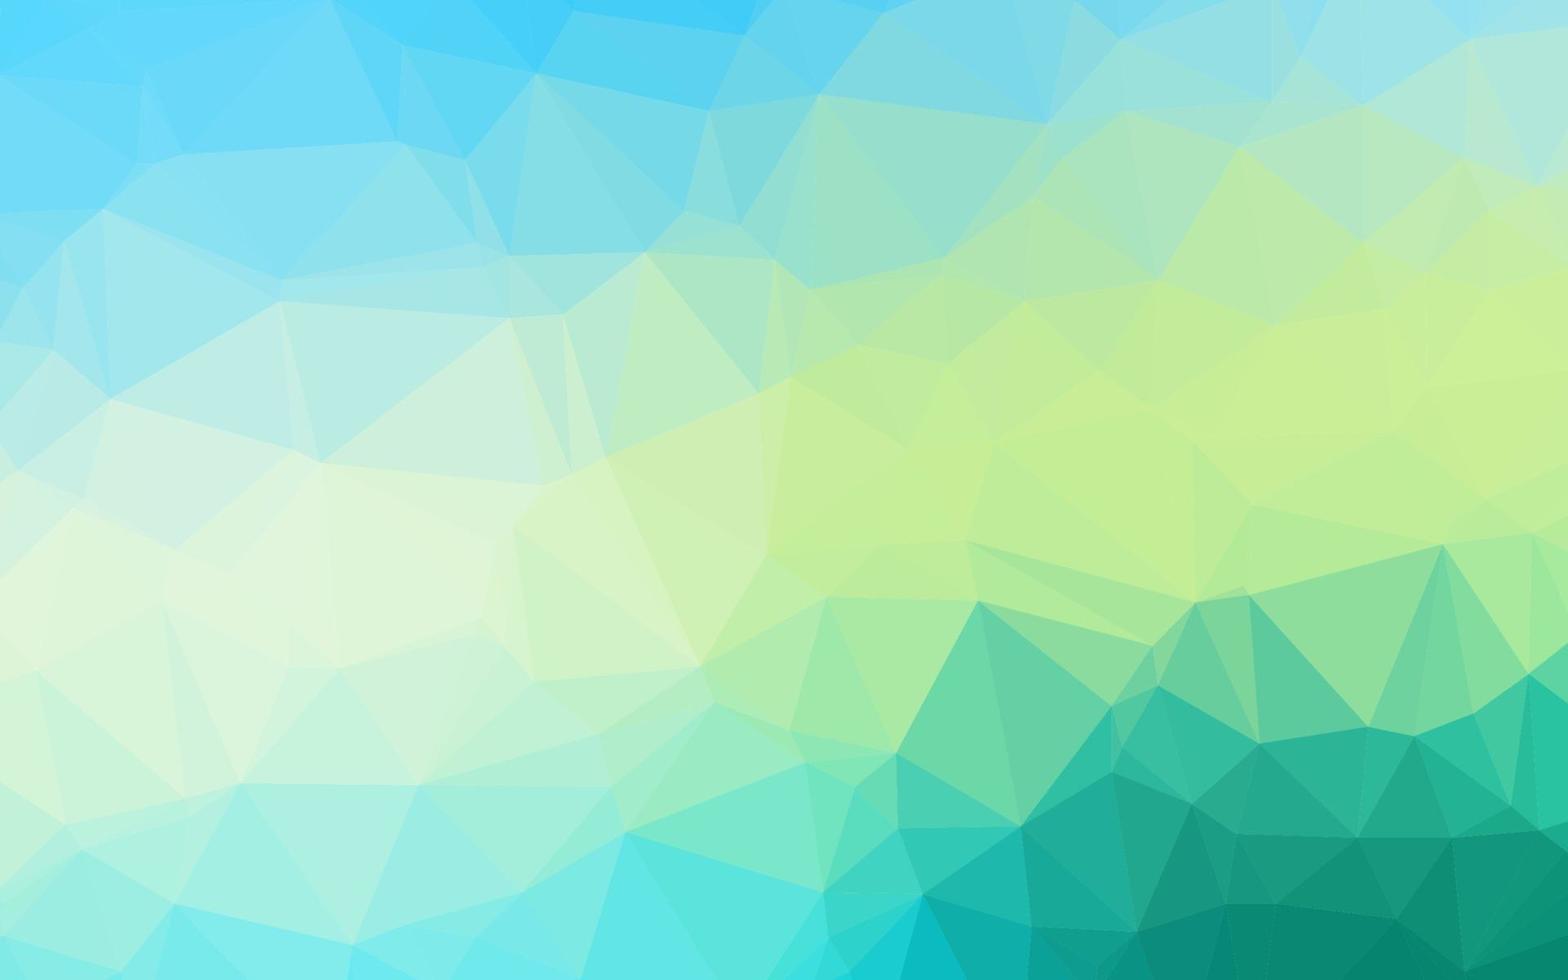 diseño poligonal abstracto de vector azul claro, amarillo.